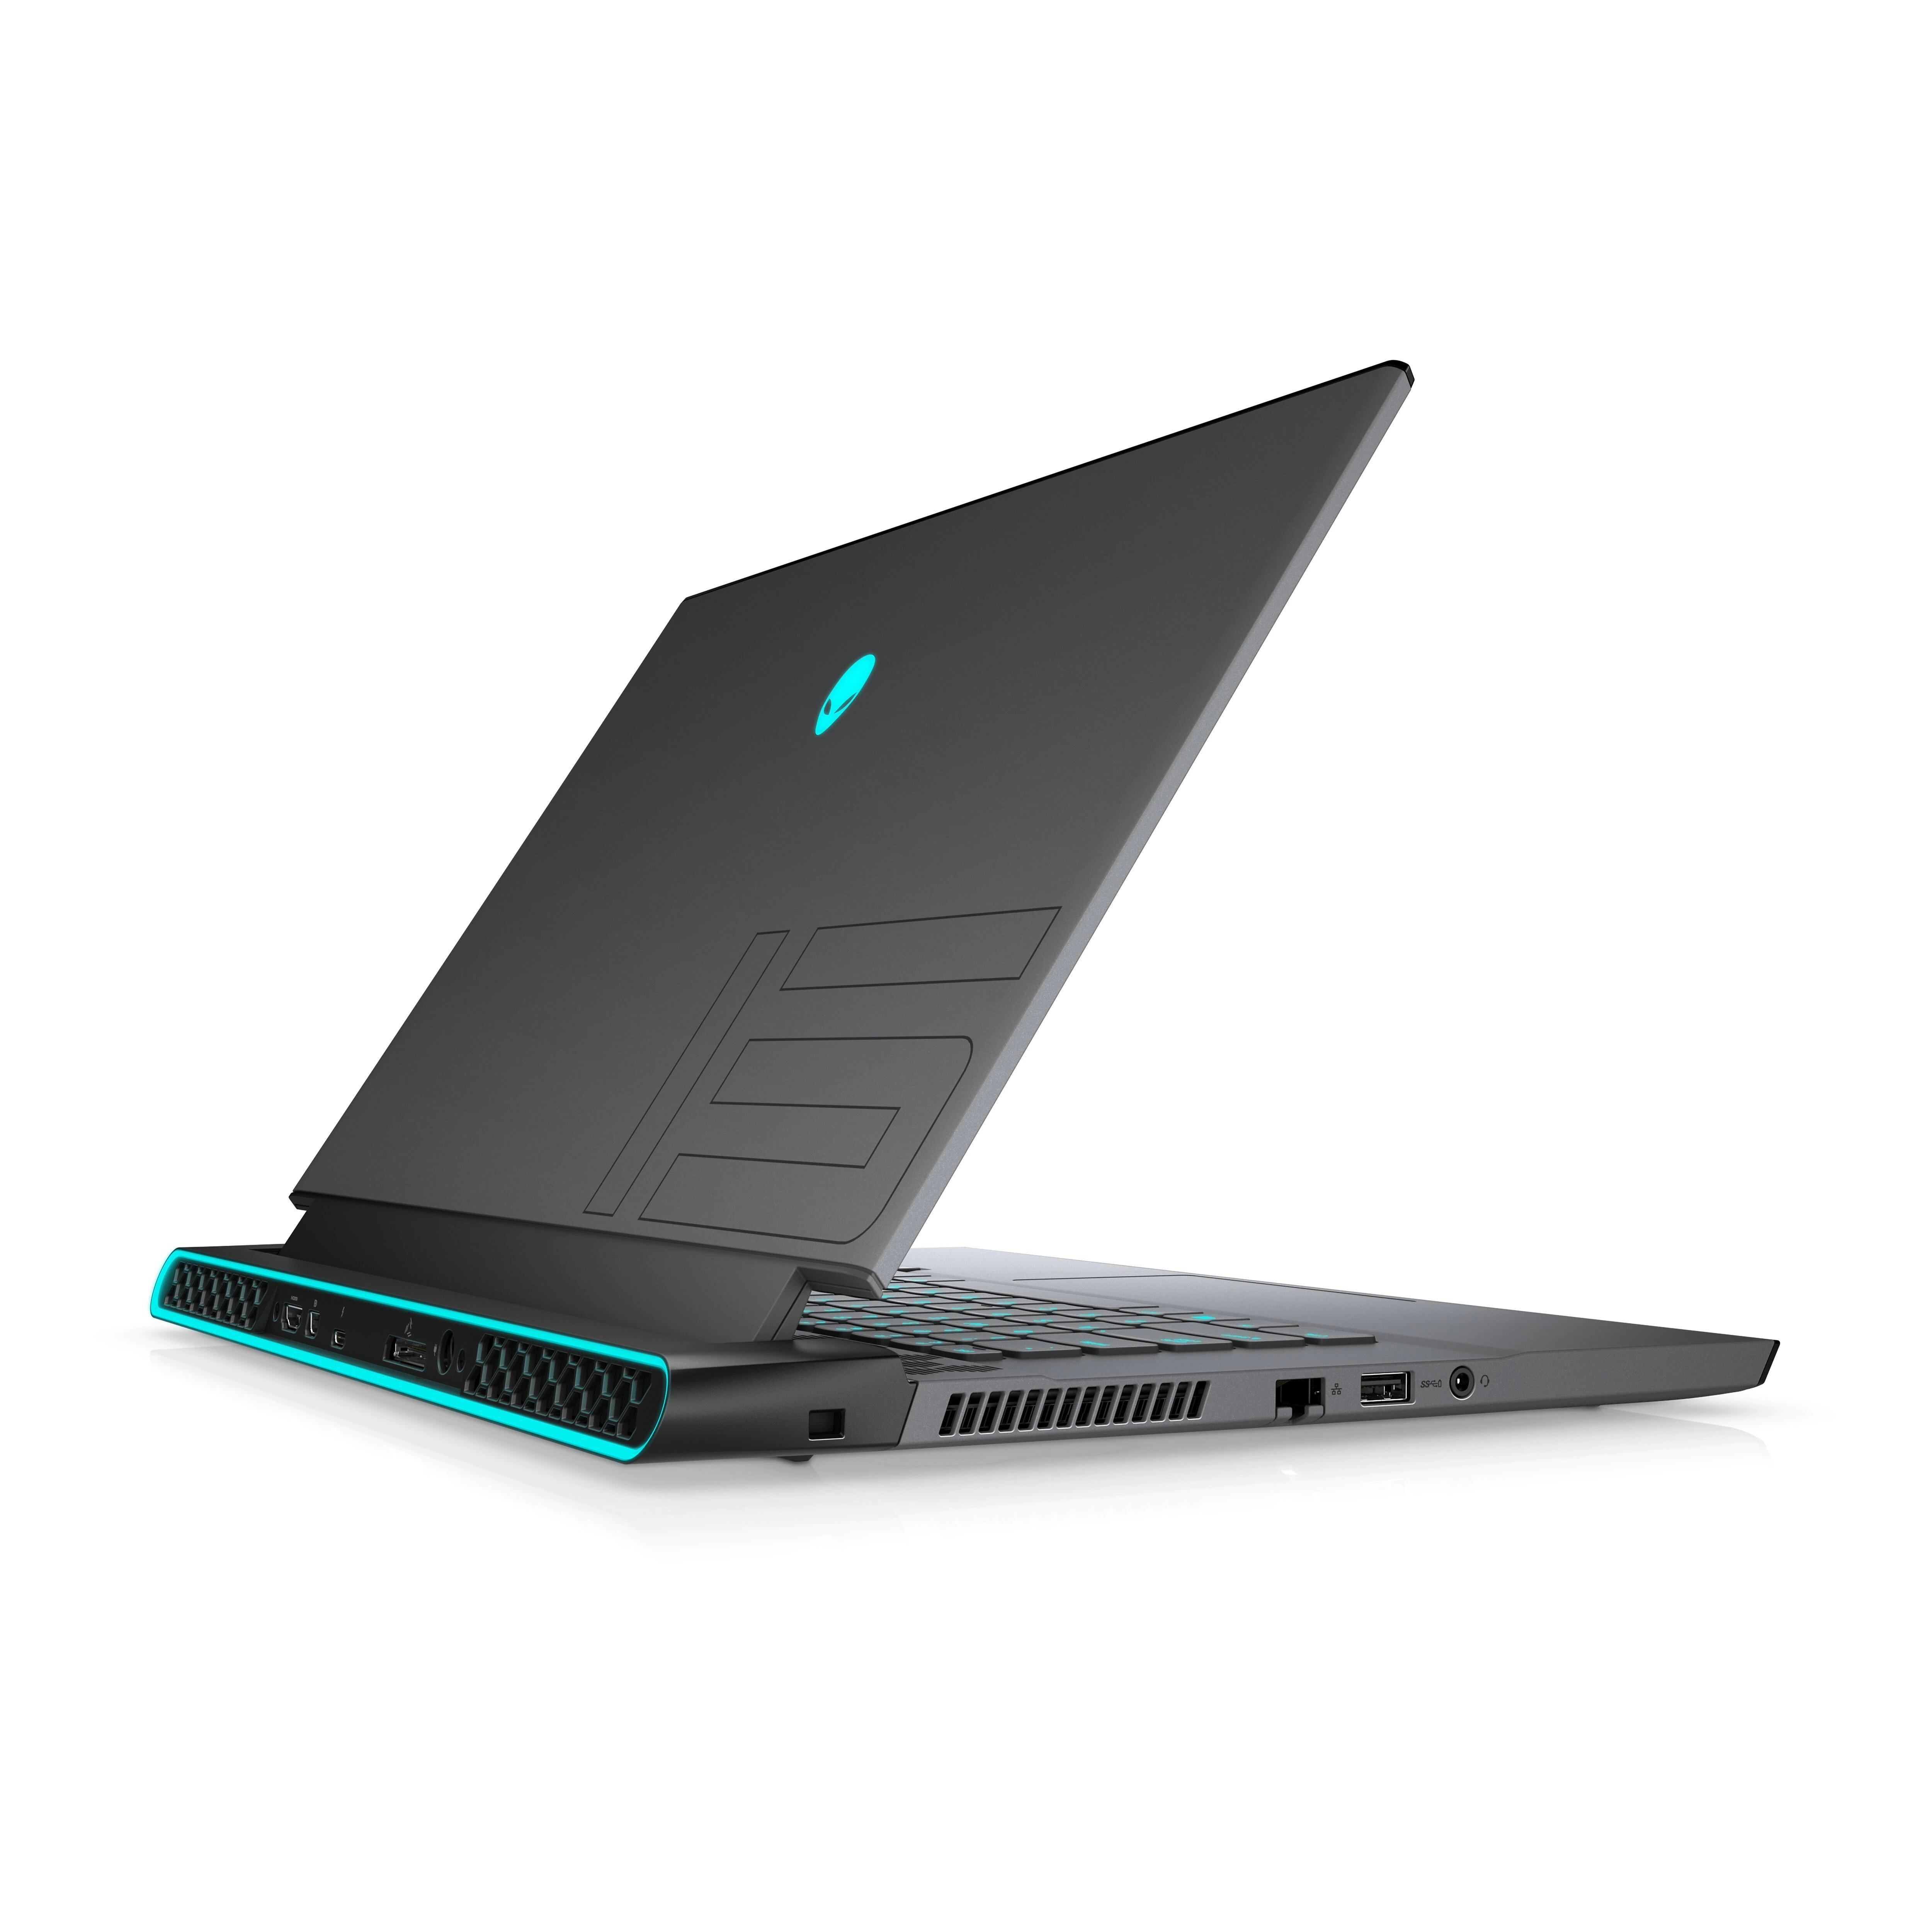 Buy Dell Alienware M15 R4 Gaming Laptop online in UAE - Tejar.com UAE